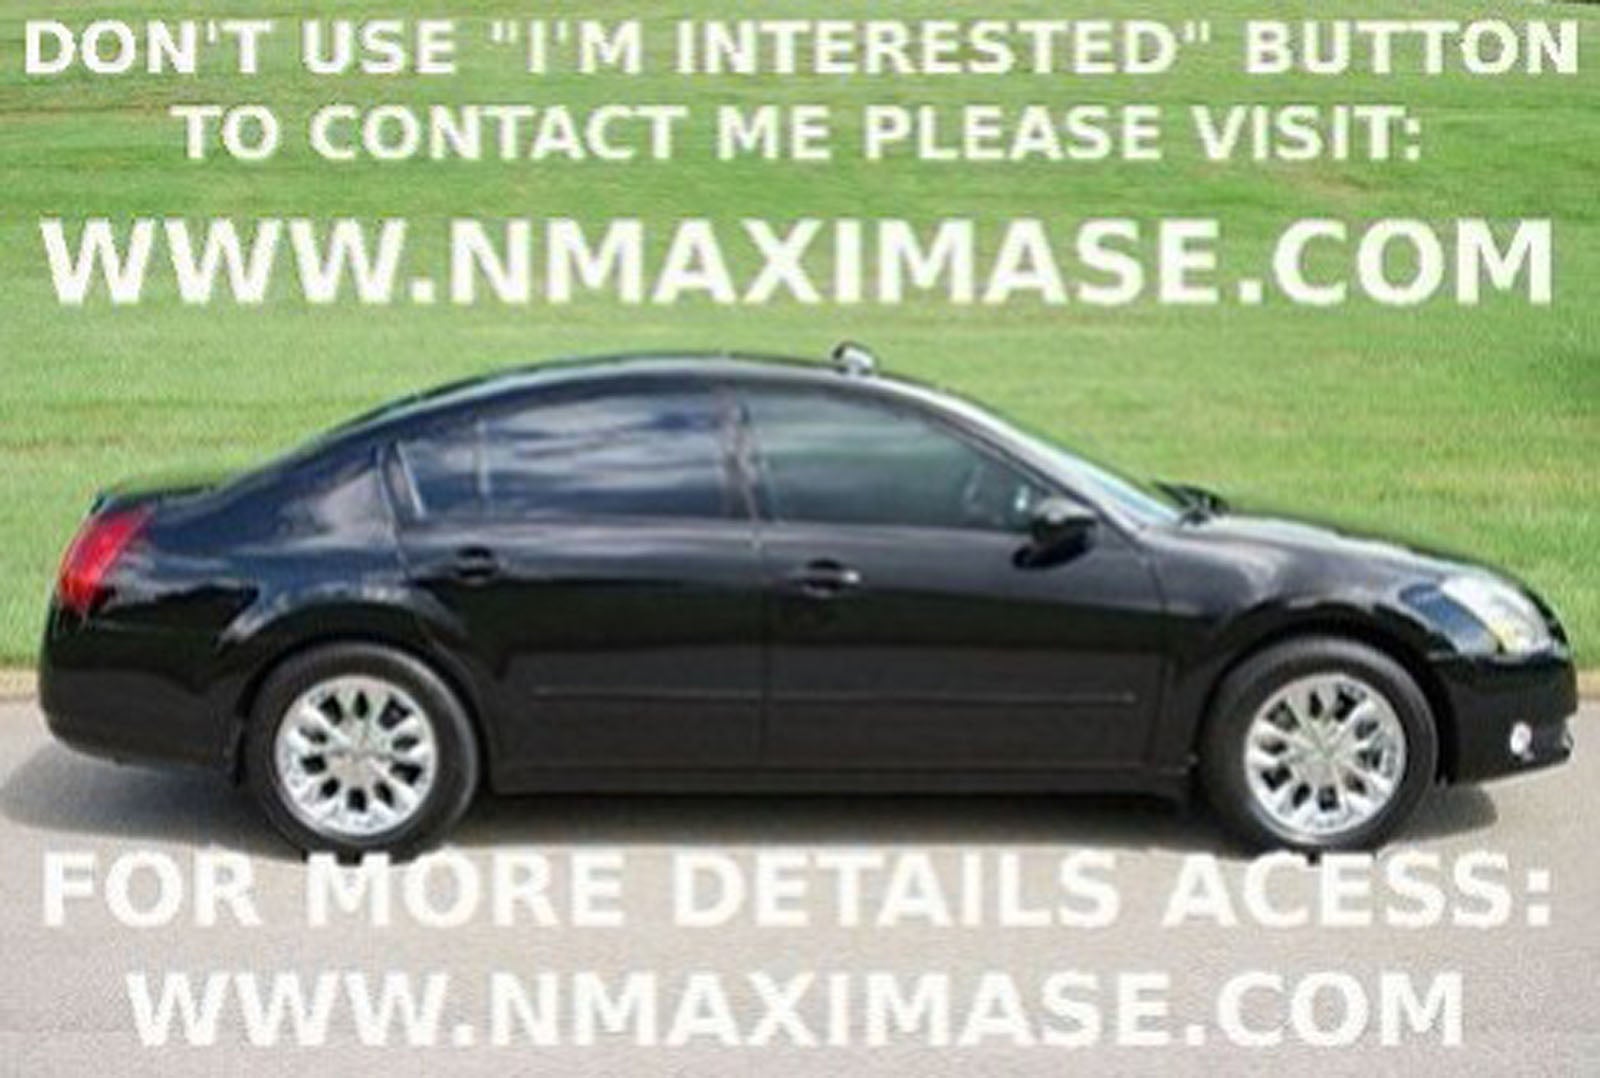 Nissan maxima for sale in boston ma #4